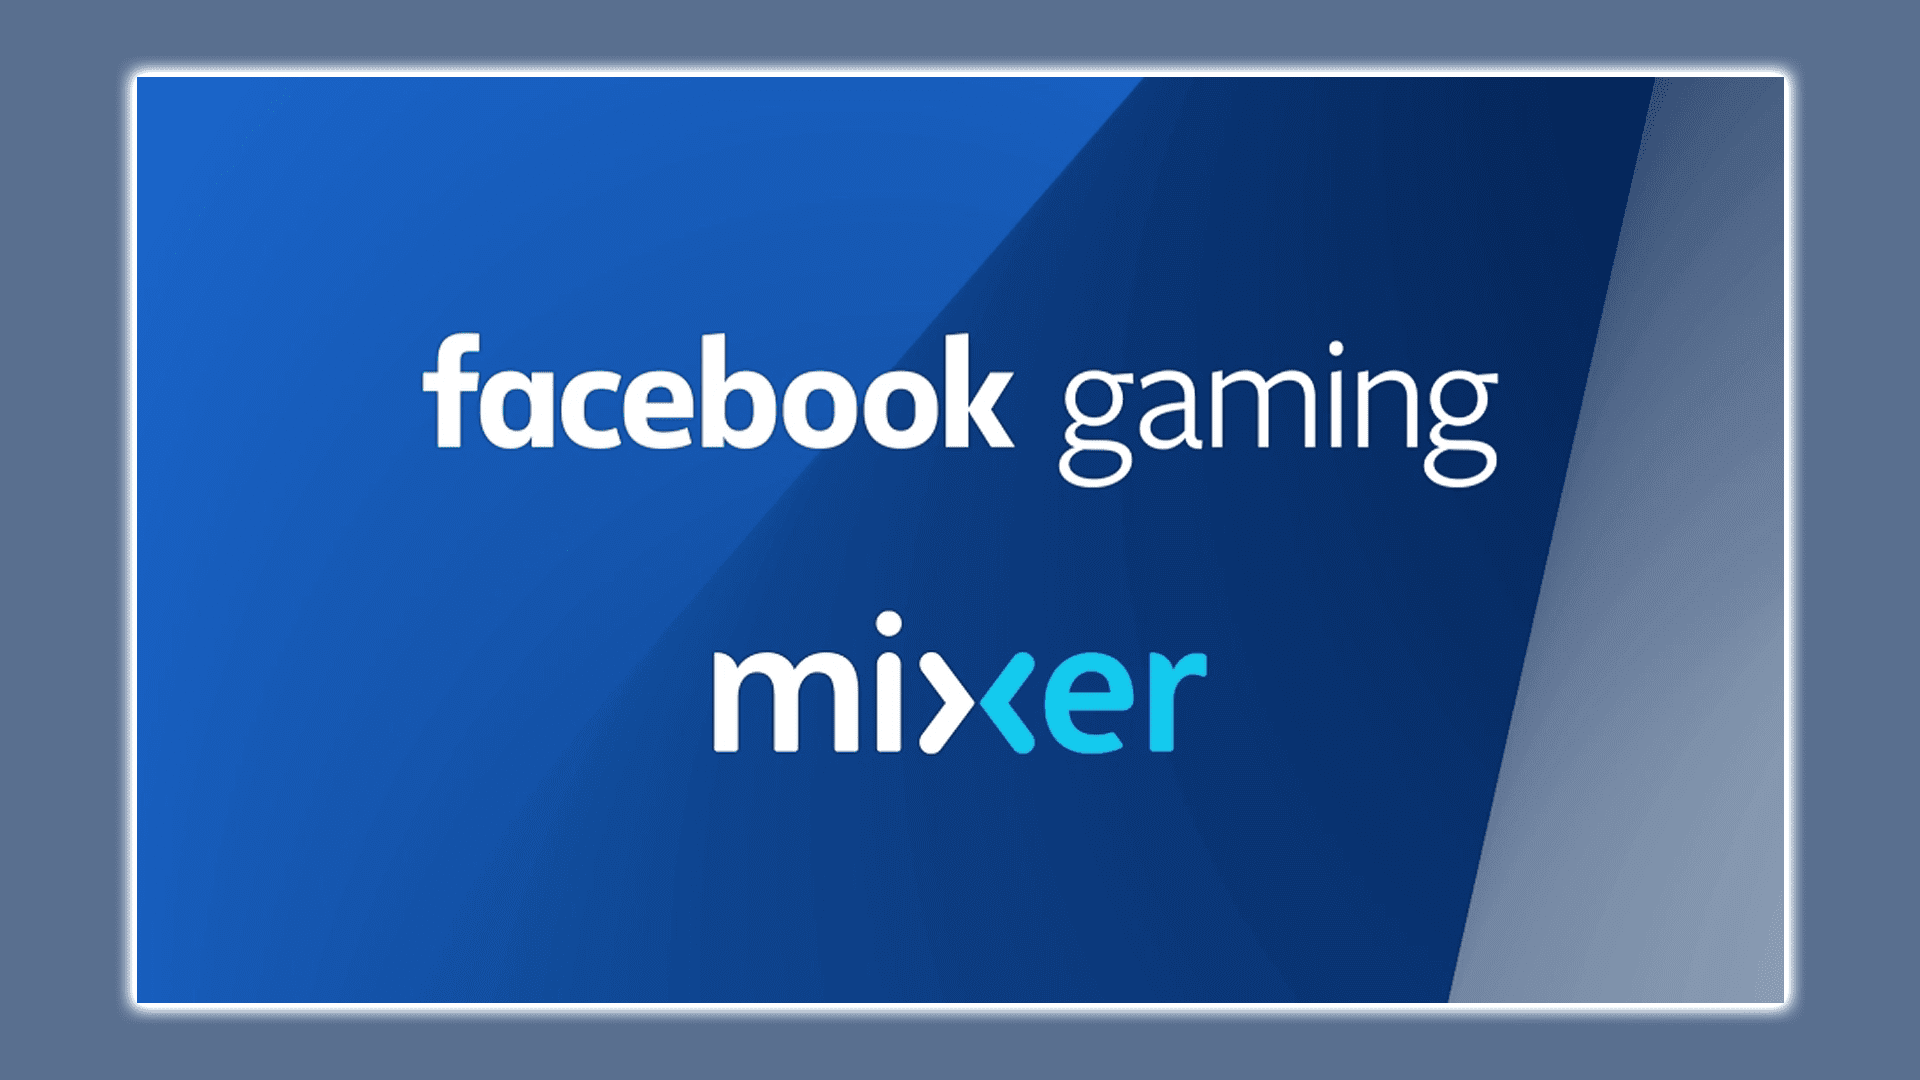 Microsoft đang kết thúc Mixer, hợp tác với Facebook Chơi game và giải phóng Ninja